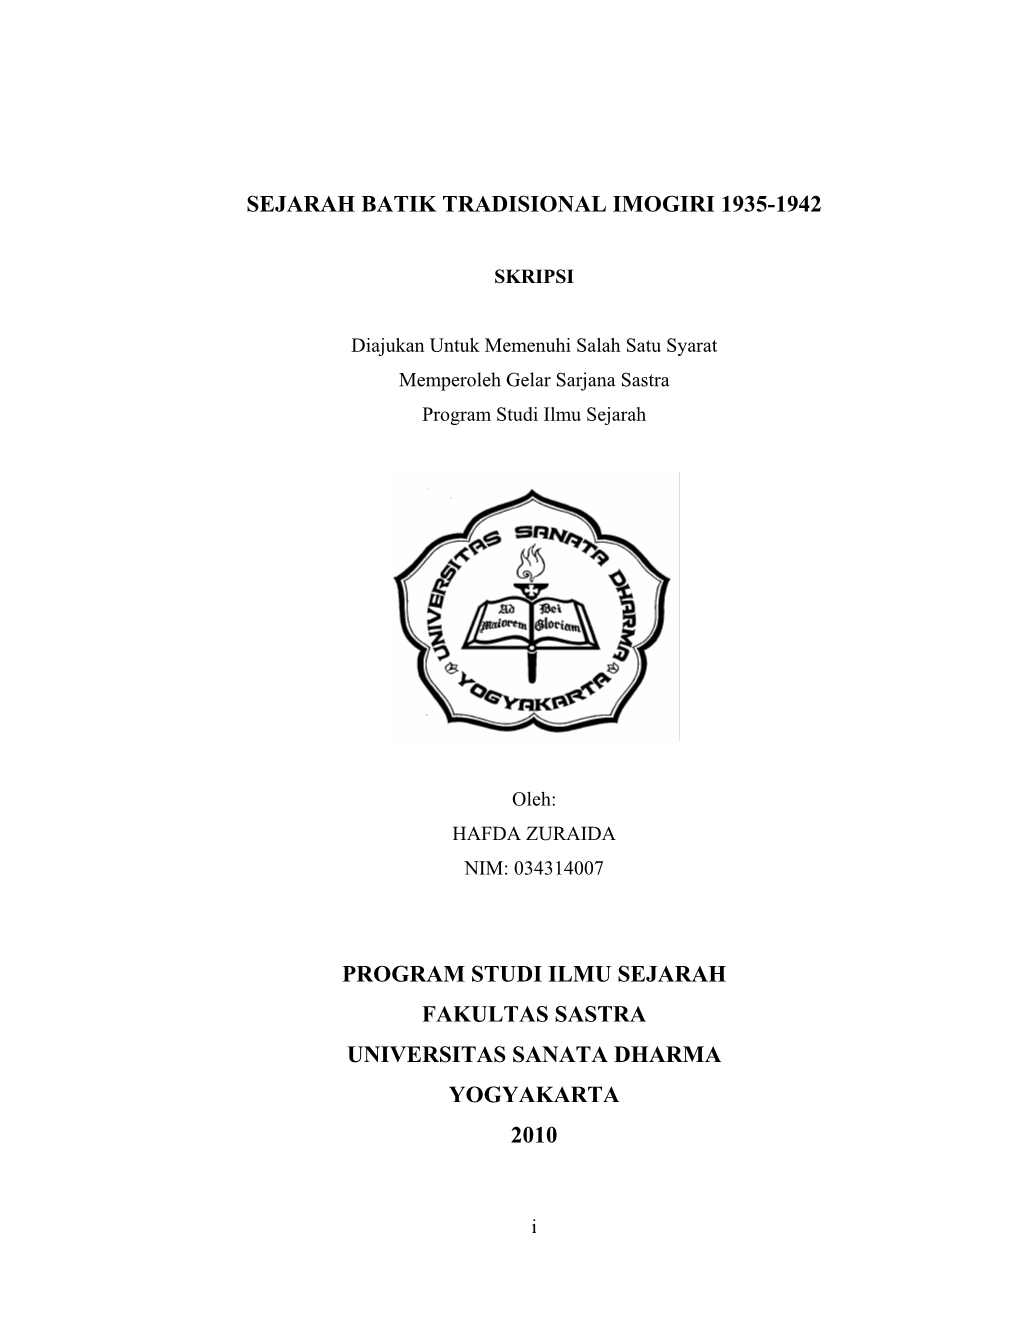 Sejarah Batik Tradisional Imogiri 1935-1942